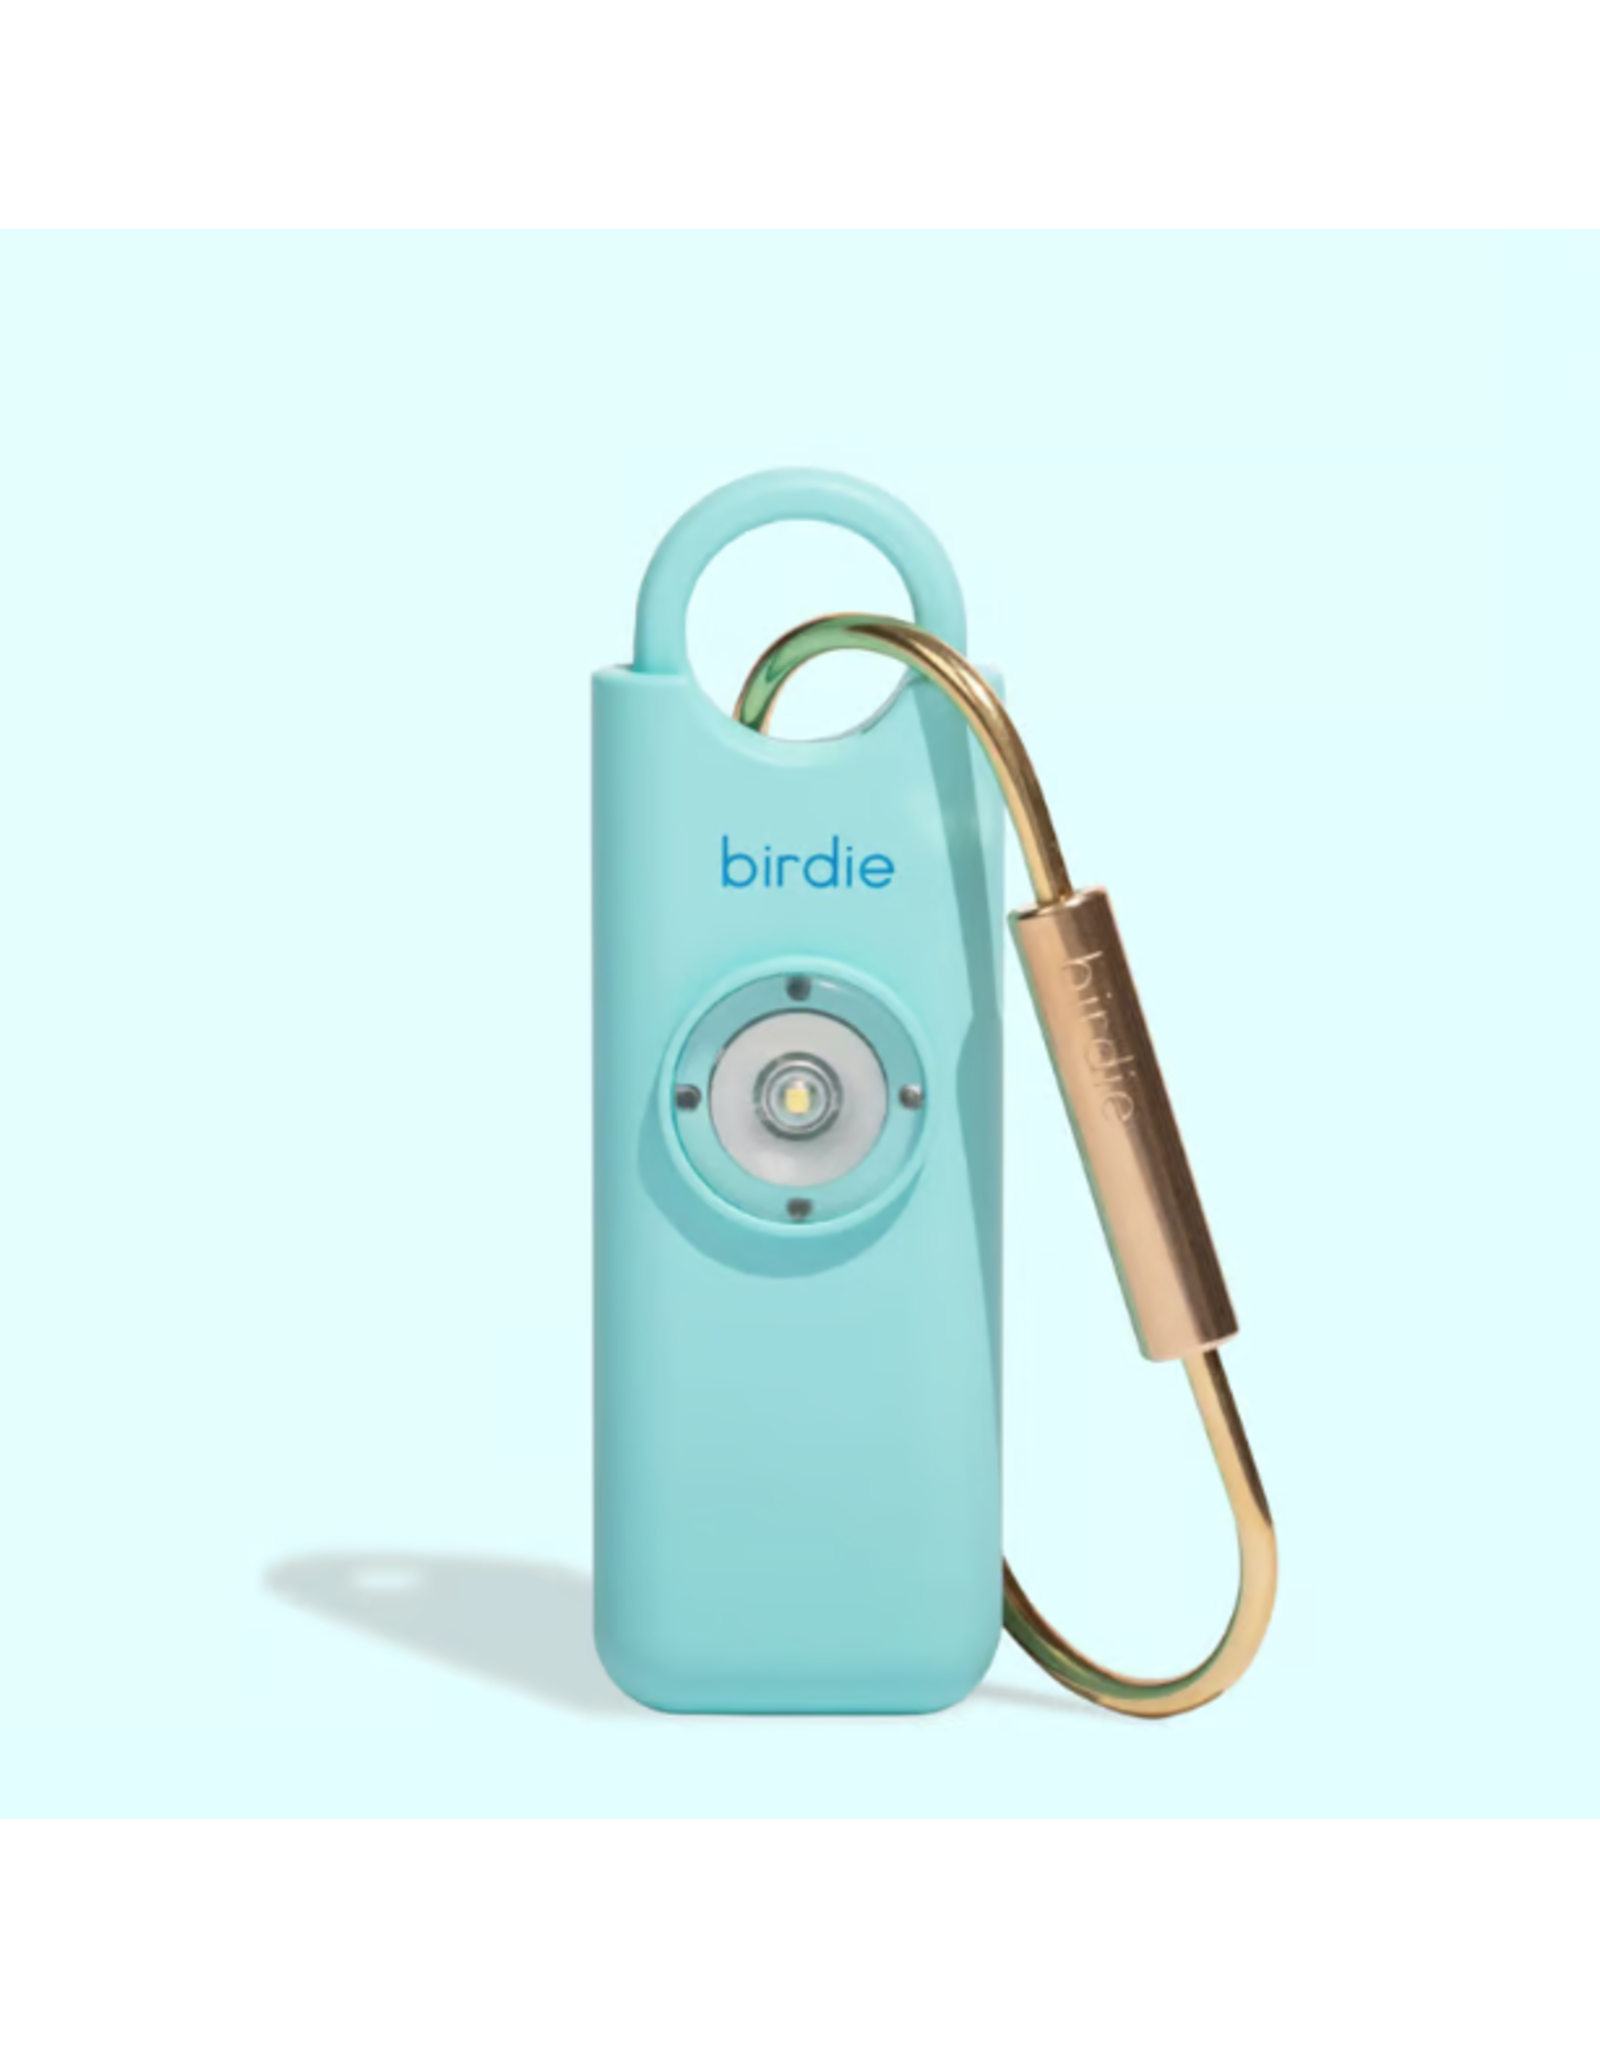 Birdie Personal Safety Alarm Aqua